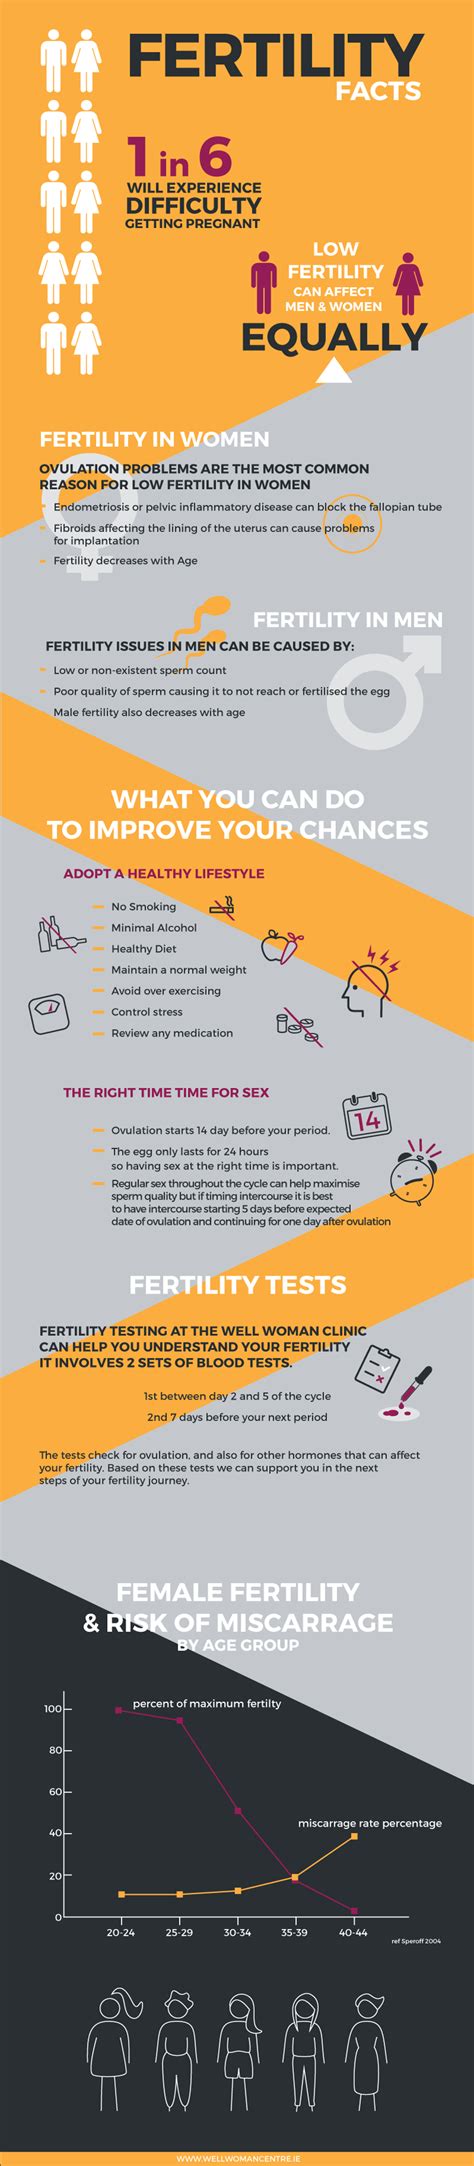 Fertility Facts Dublin Well Woman Centre